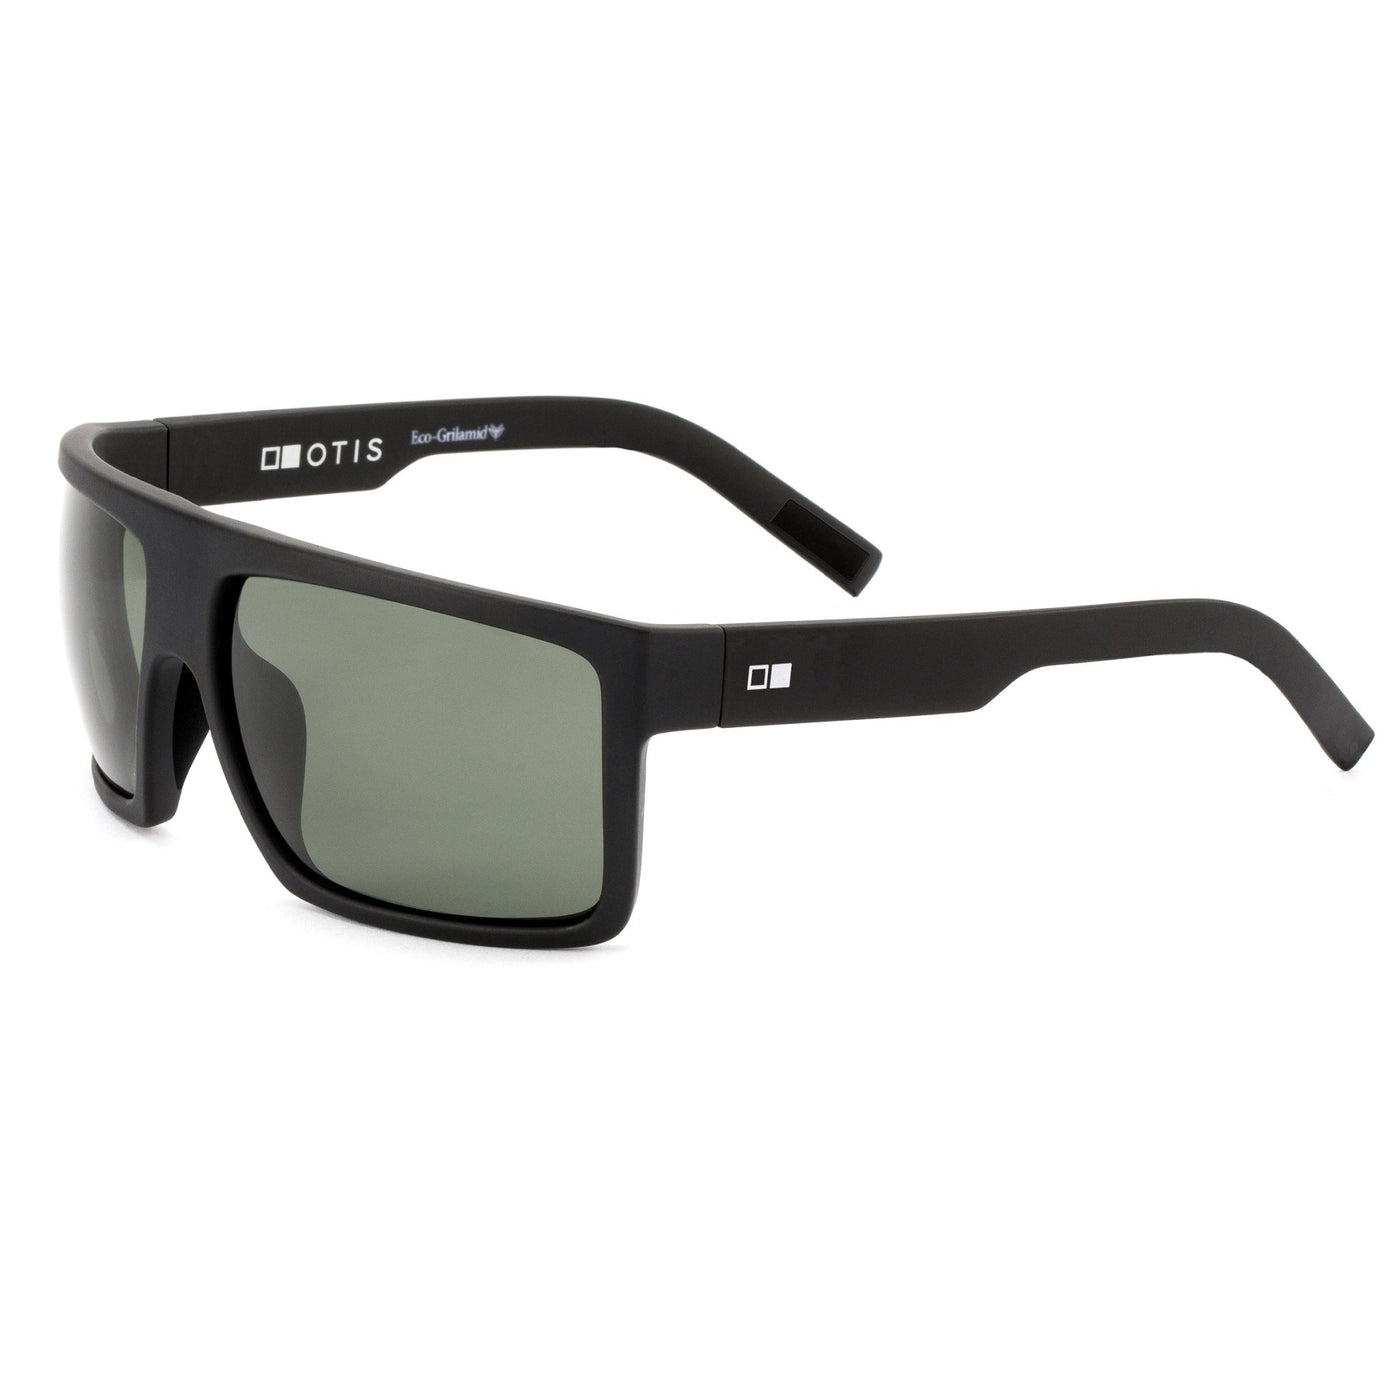 Black OTIS Sunglasses from the side